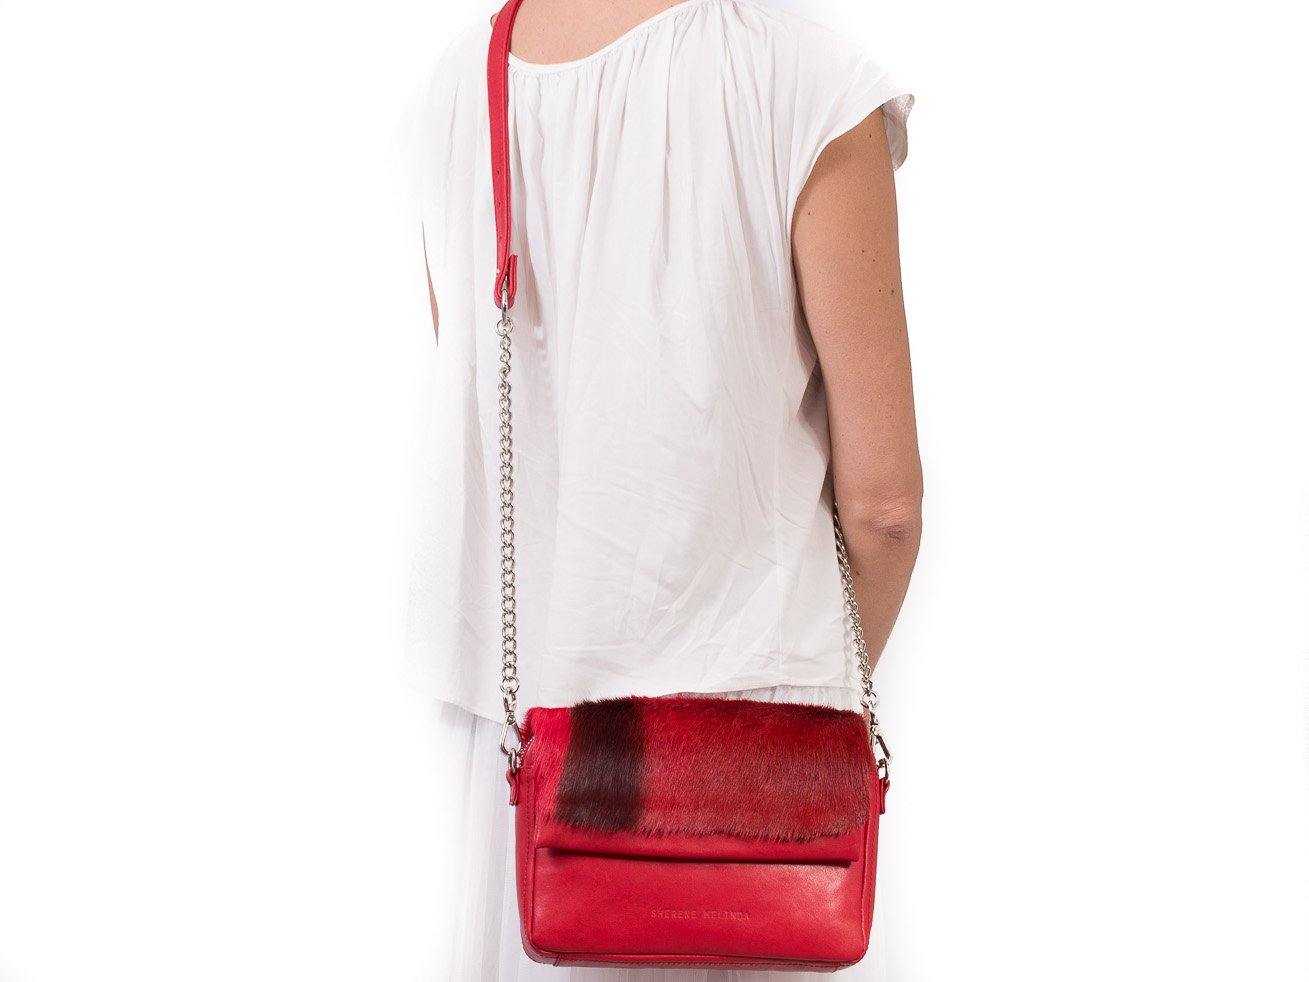 Red Shoulder Bag with a fan - SHERENE MELINDA